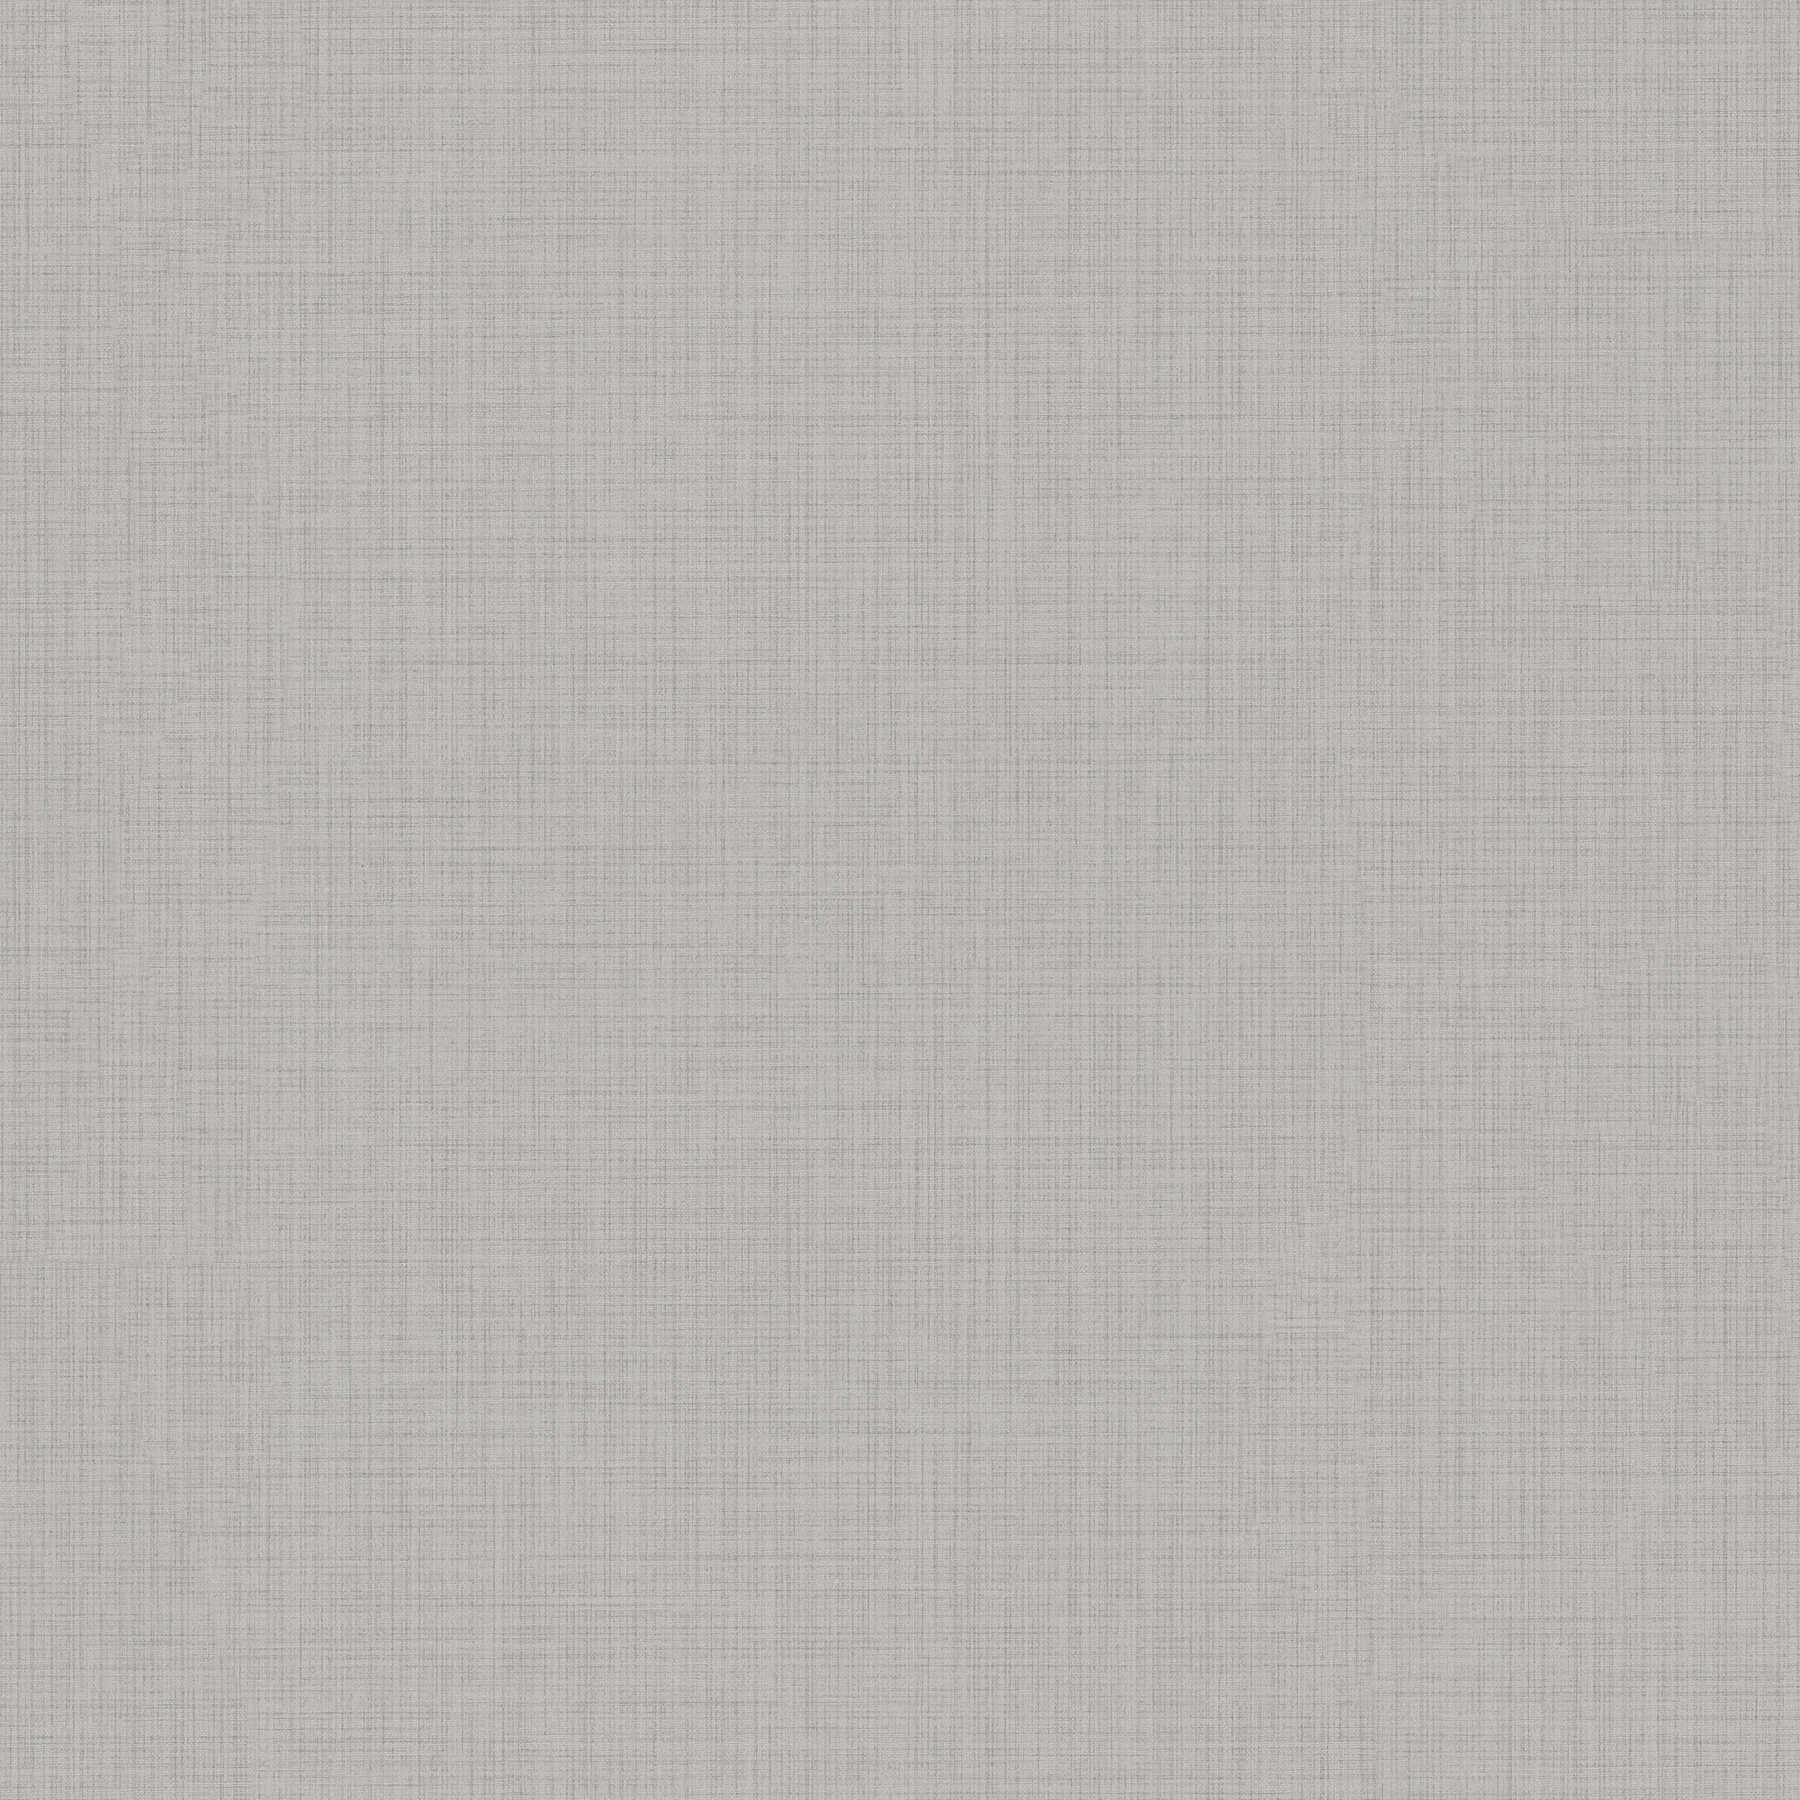 papier peint chiné beige gris chiné avec motif textile
